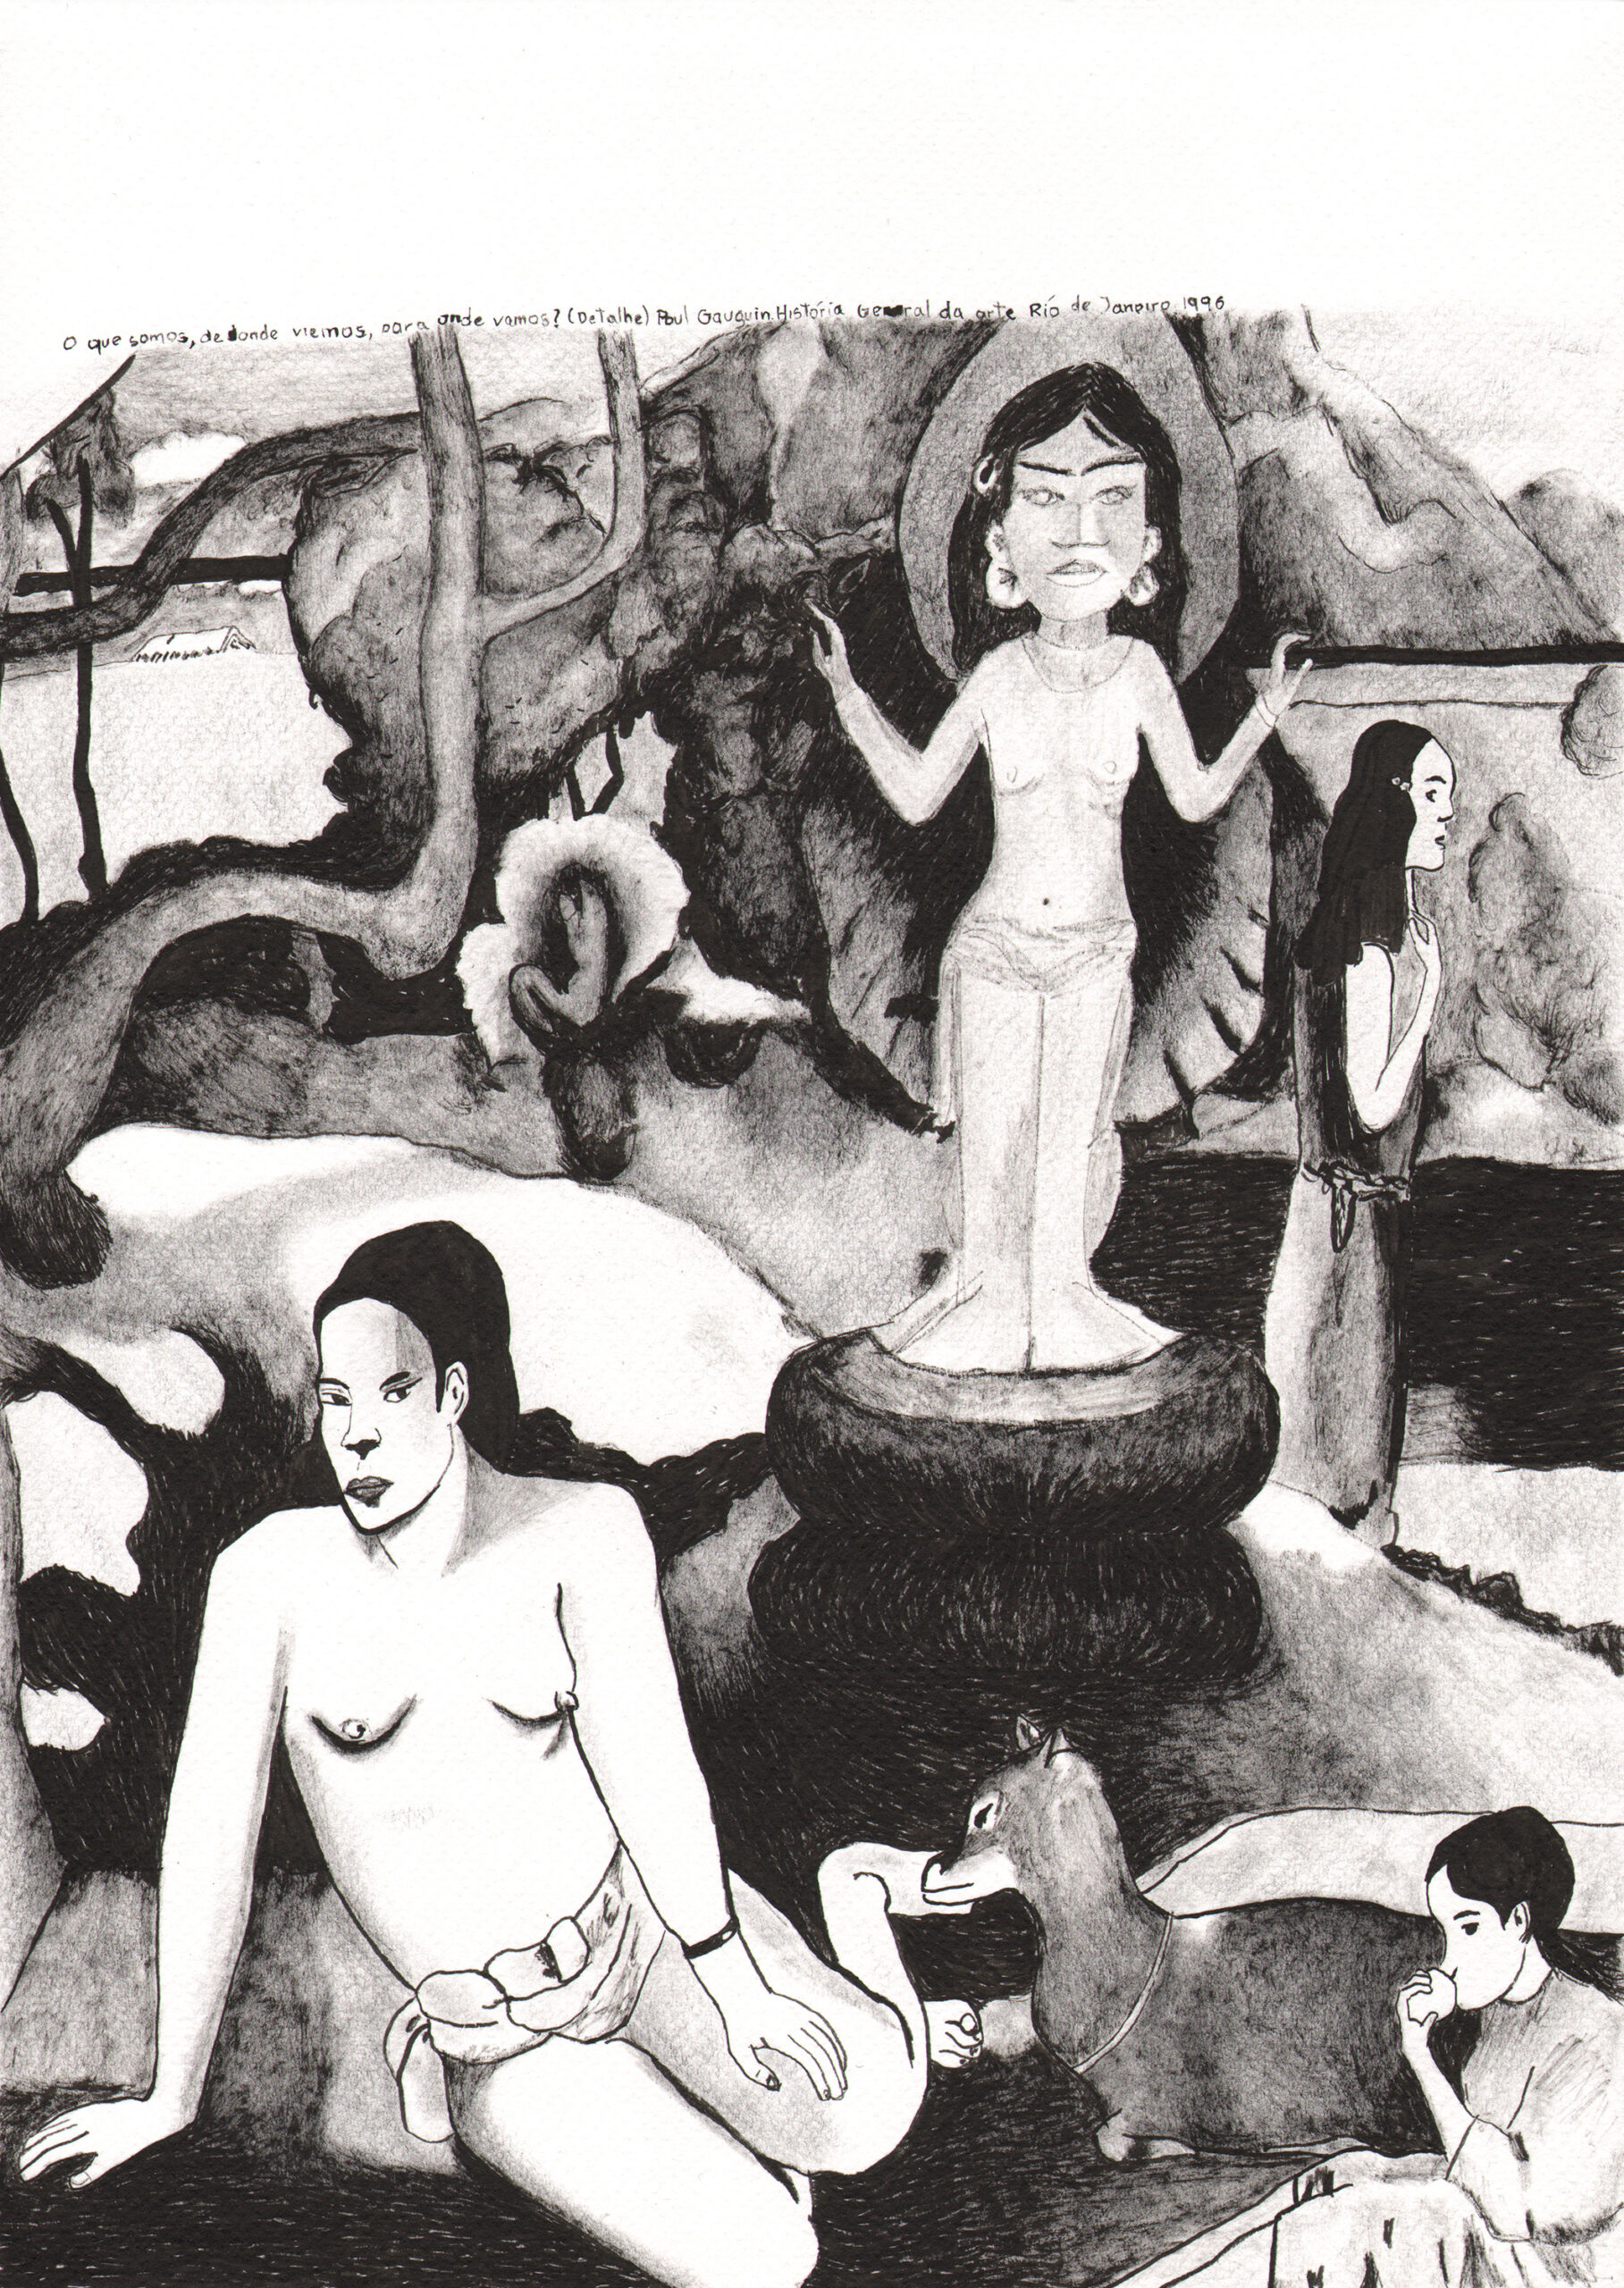 Gauguin. Serie Colección Belo Horizonte